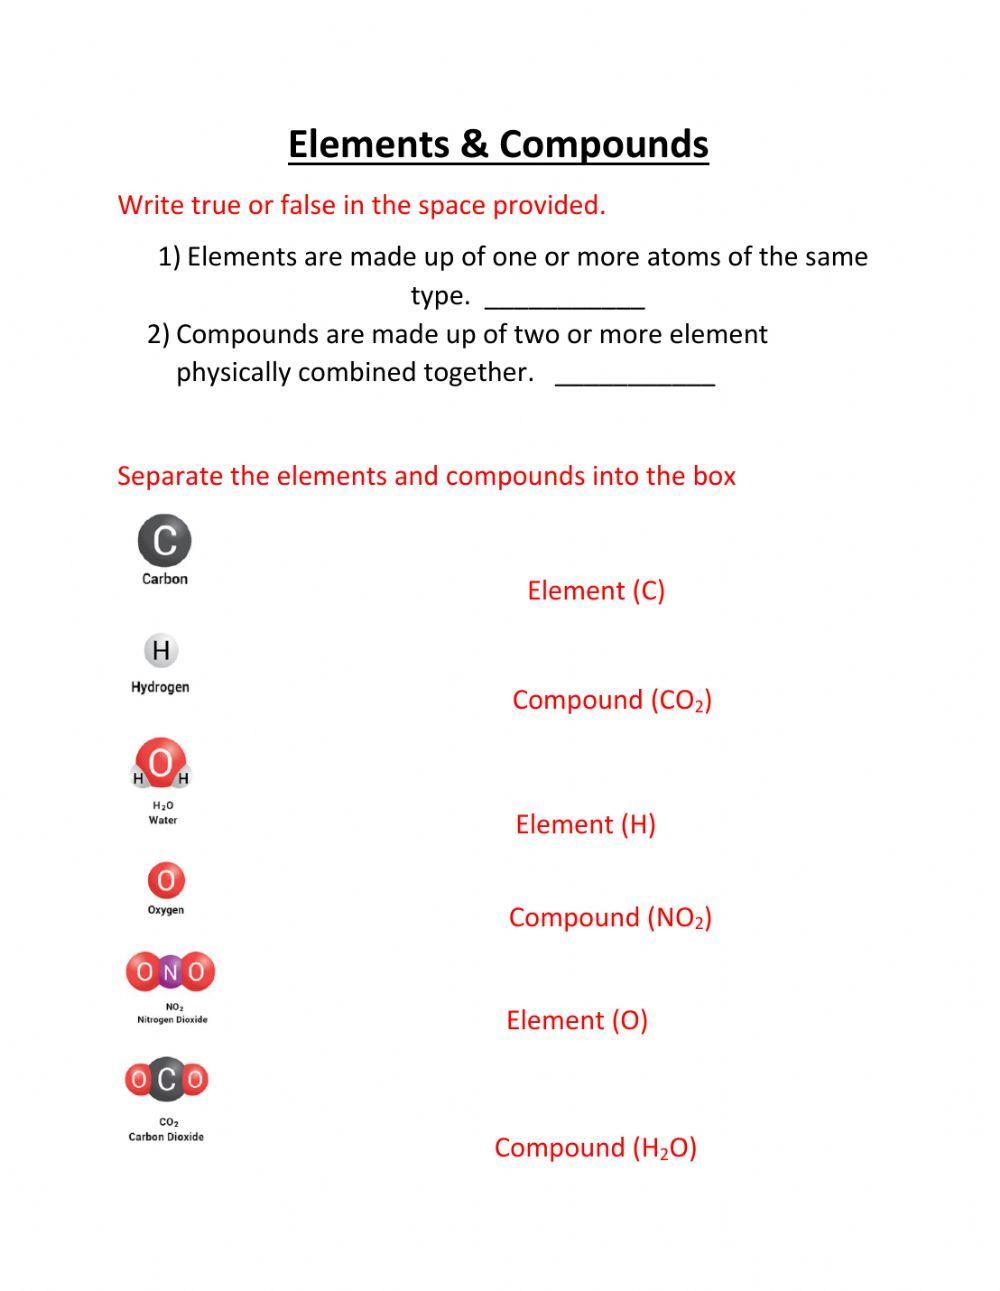 Elements & compounds